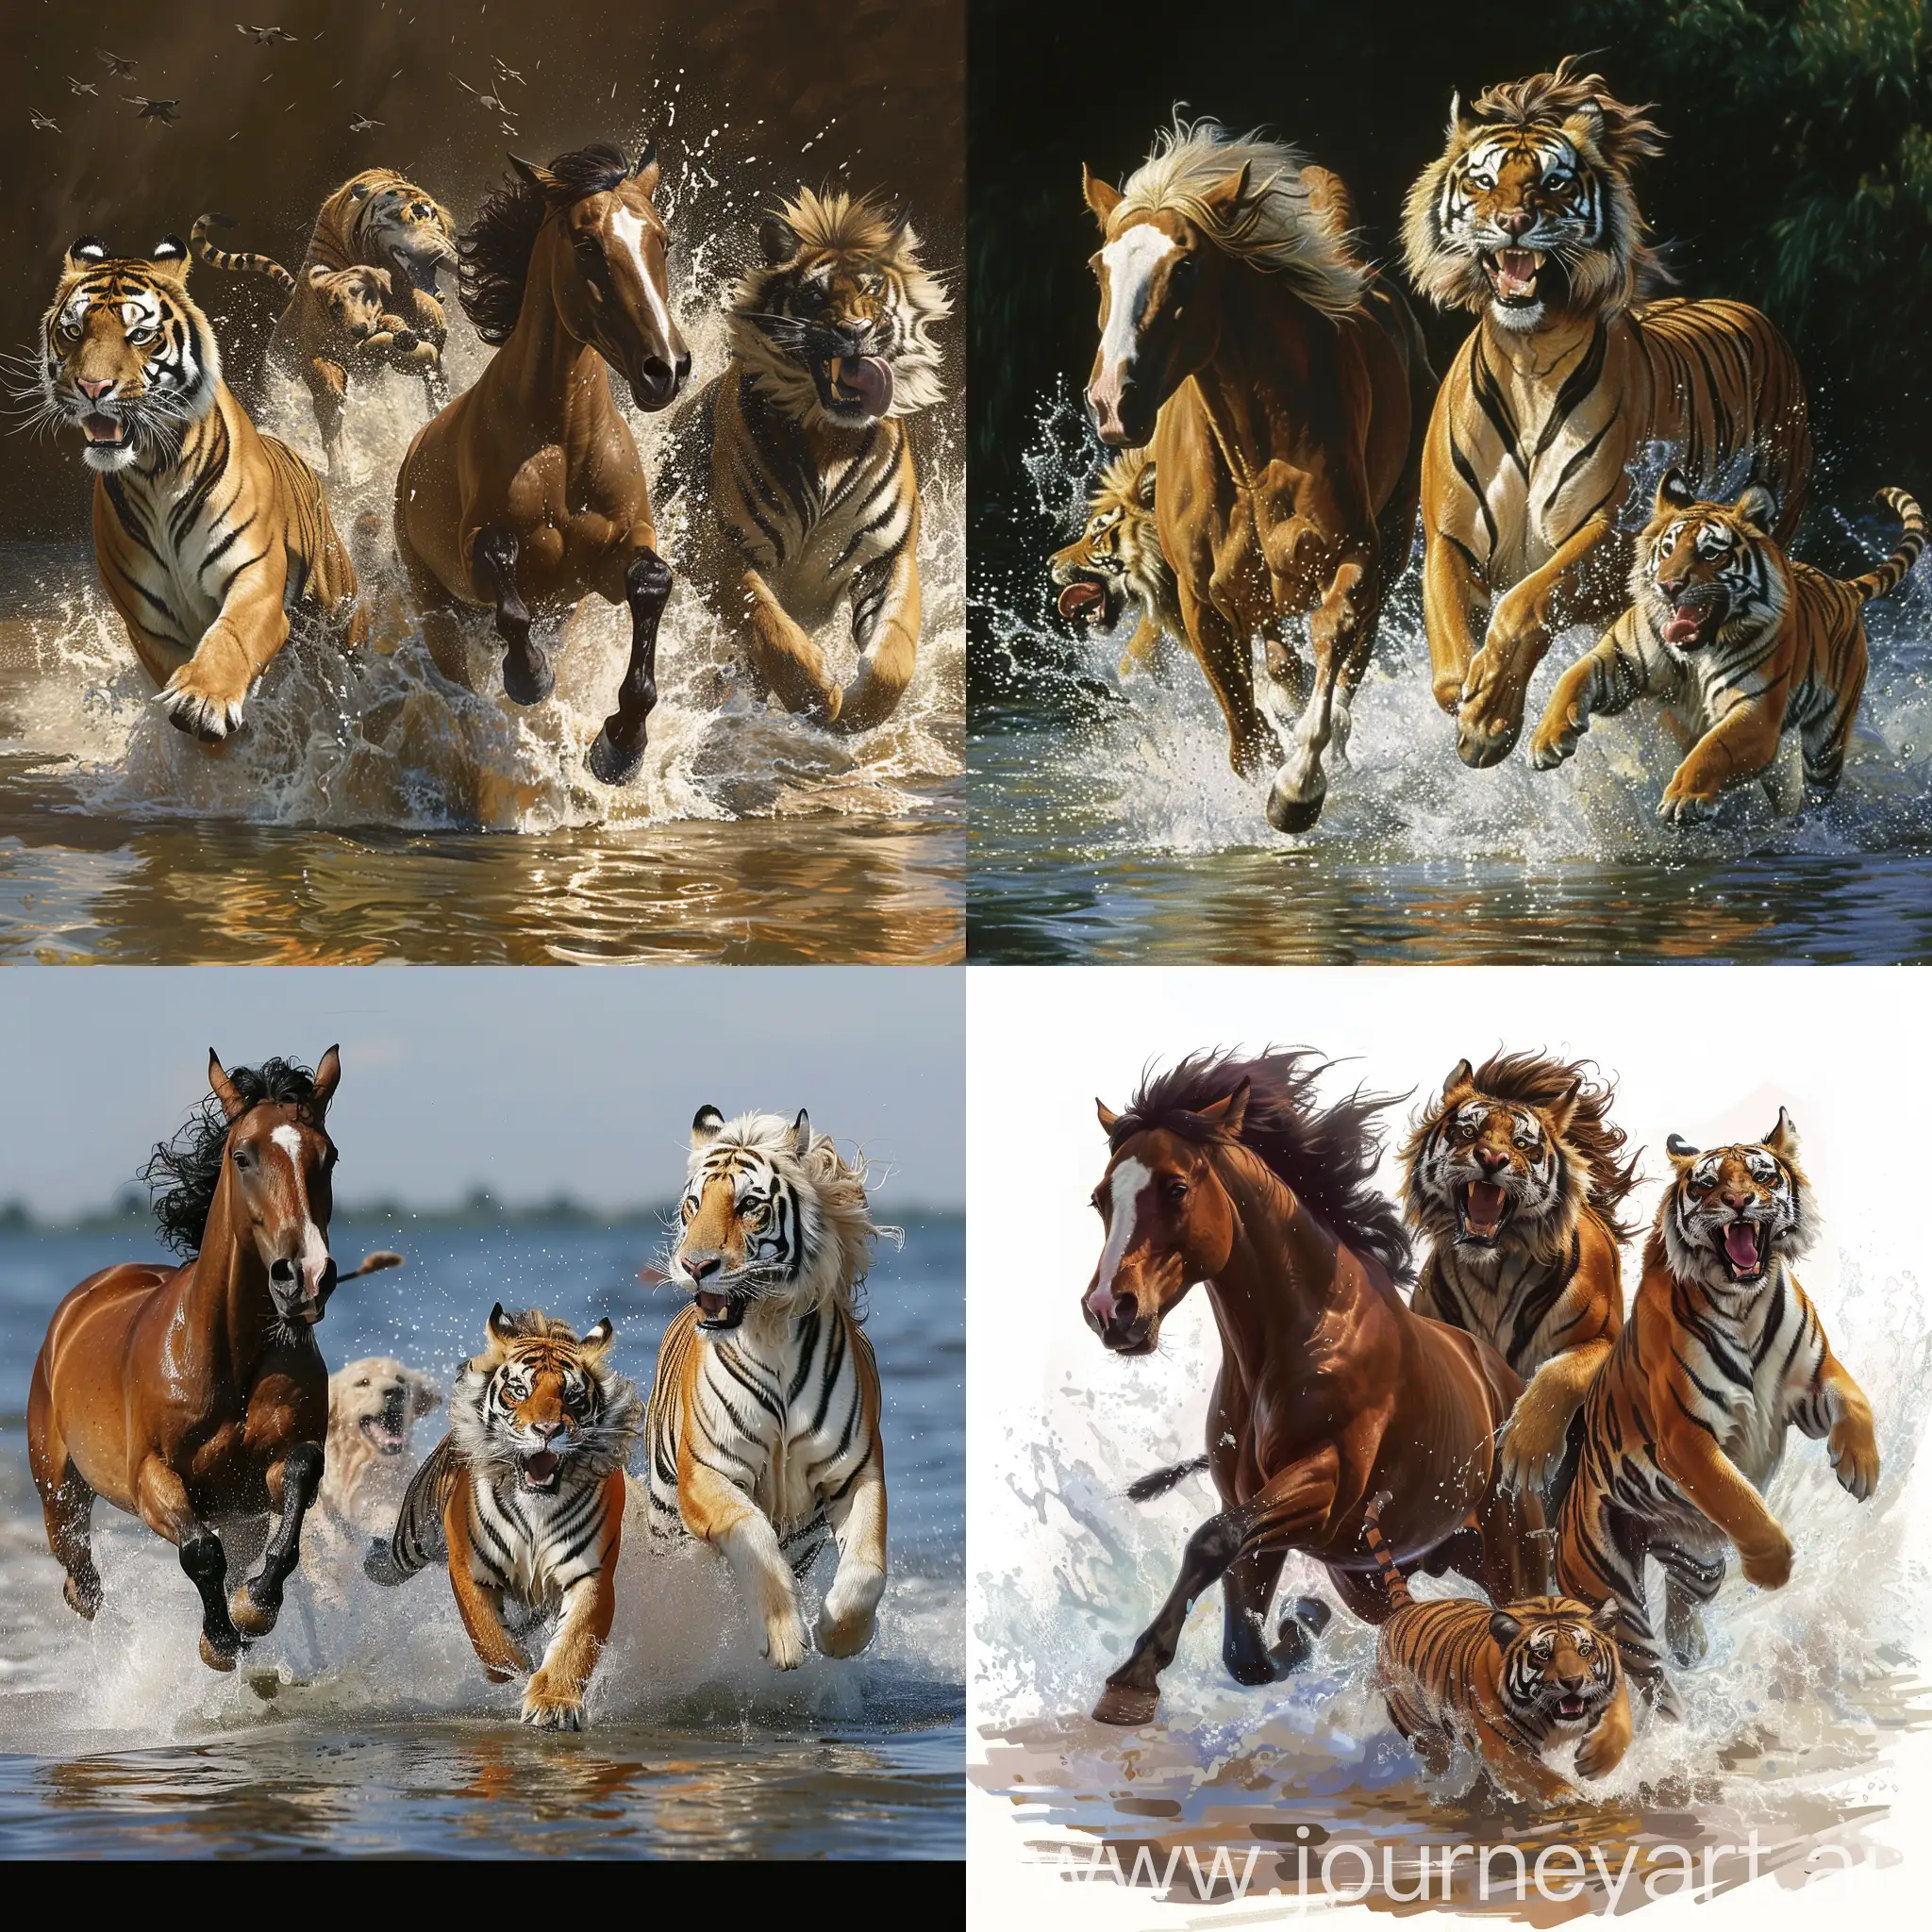 Лошадь, тигр и собака бегут рядом, по воде,
